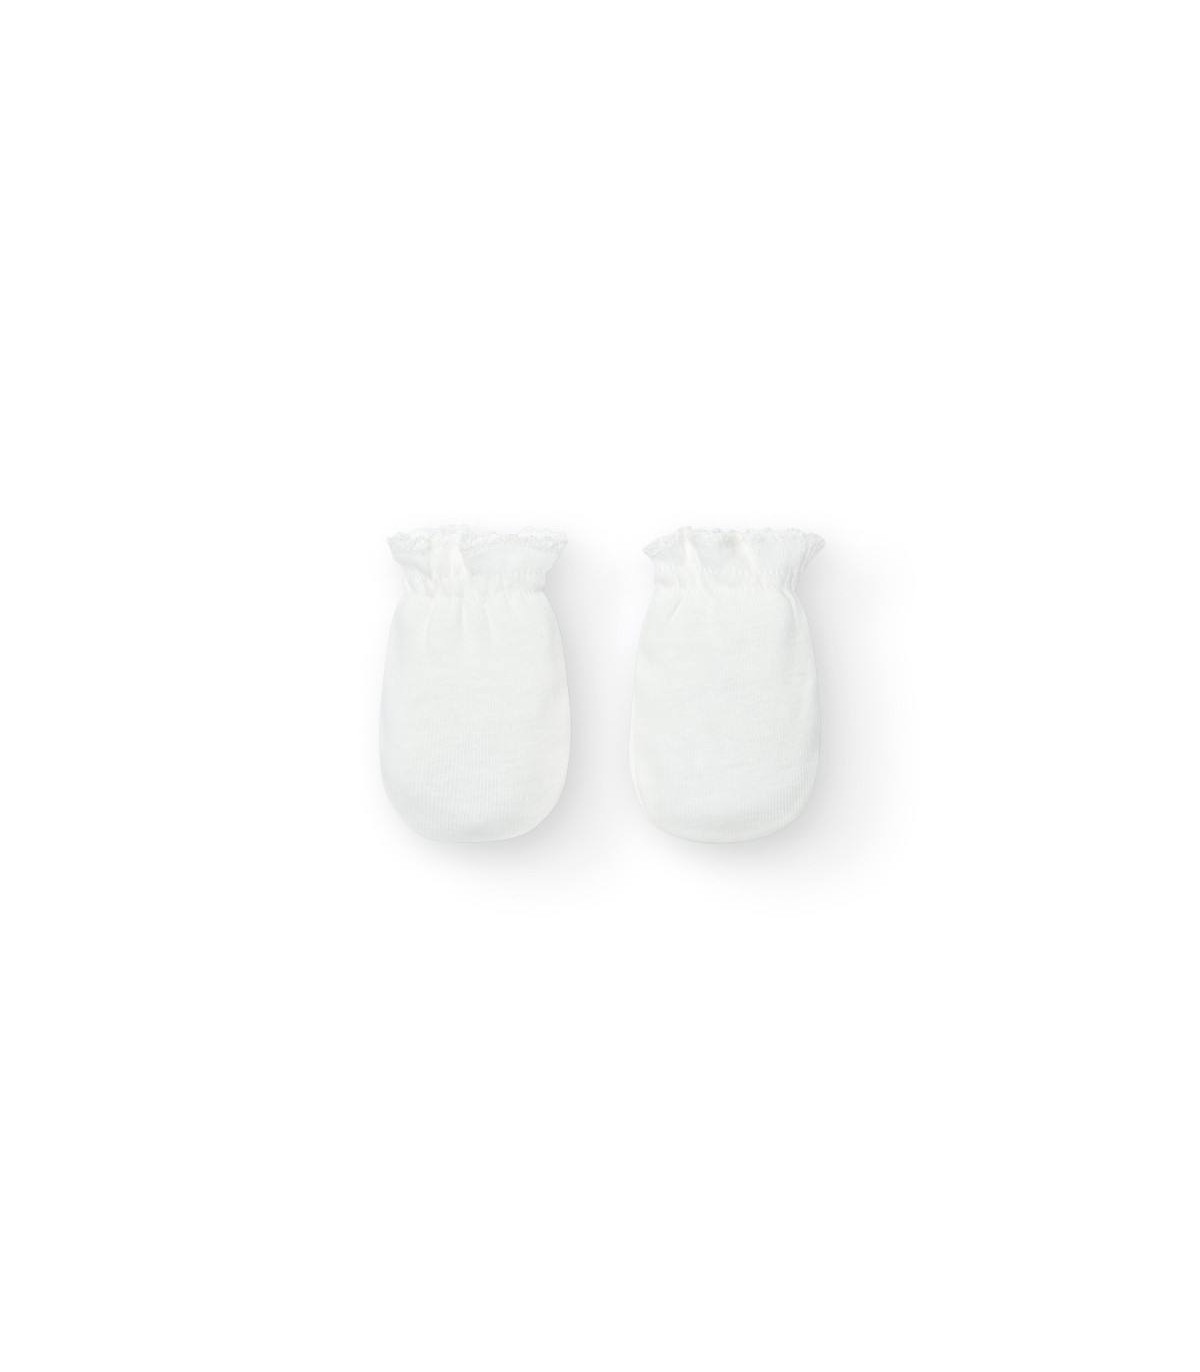 Manoplas y patucos bebé, 100% algodón diseños exclusivos